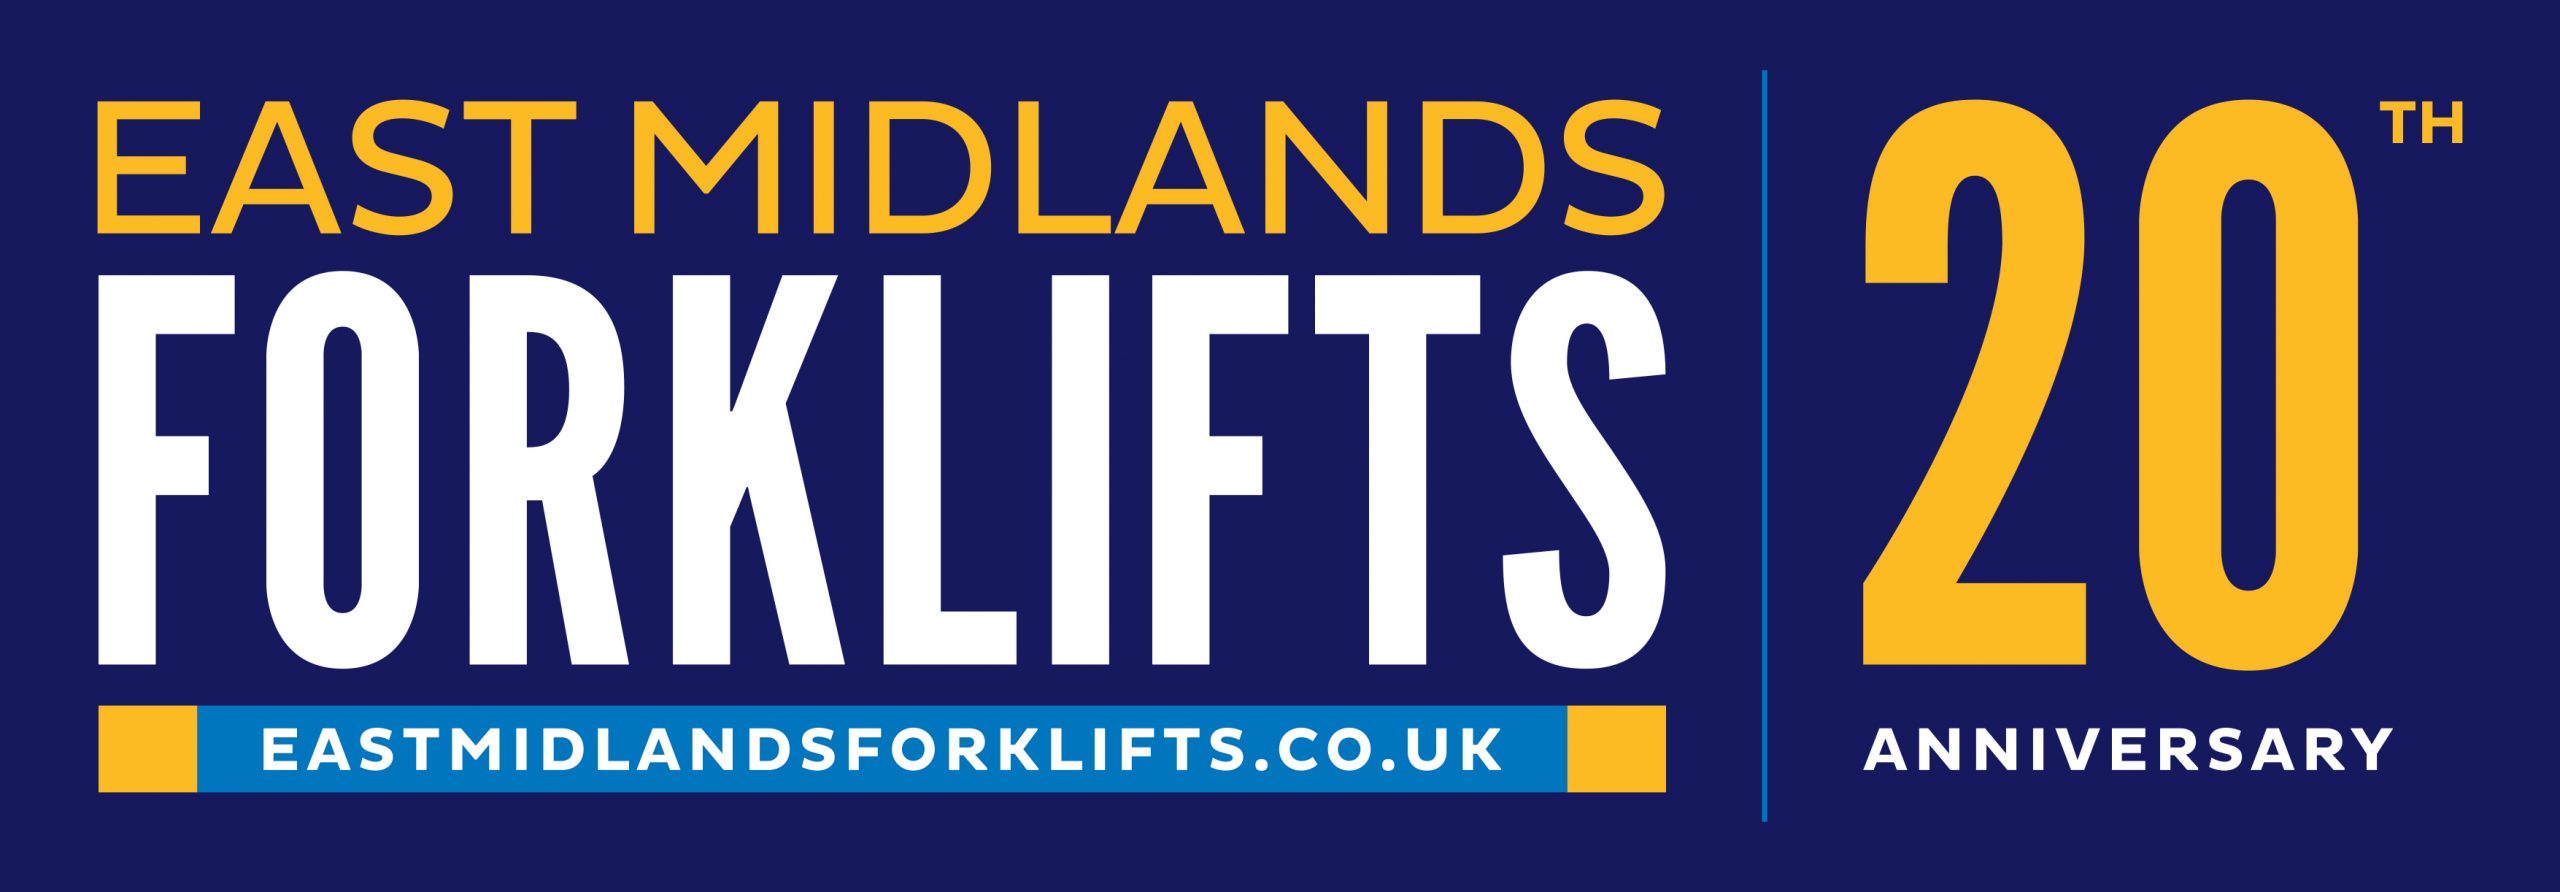 East Midlands Forklifts Logo